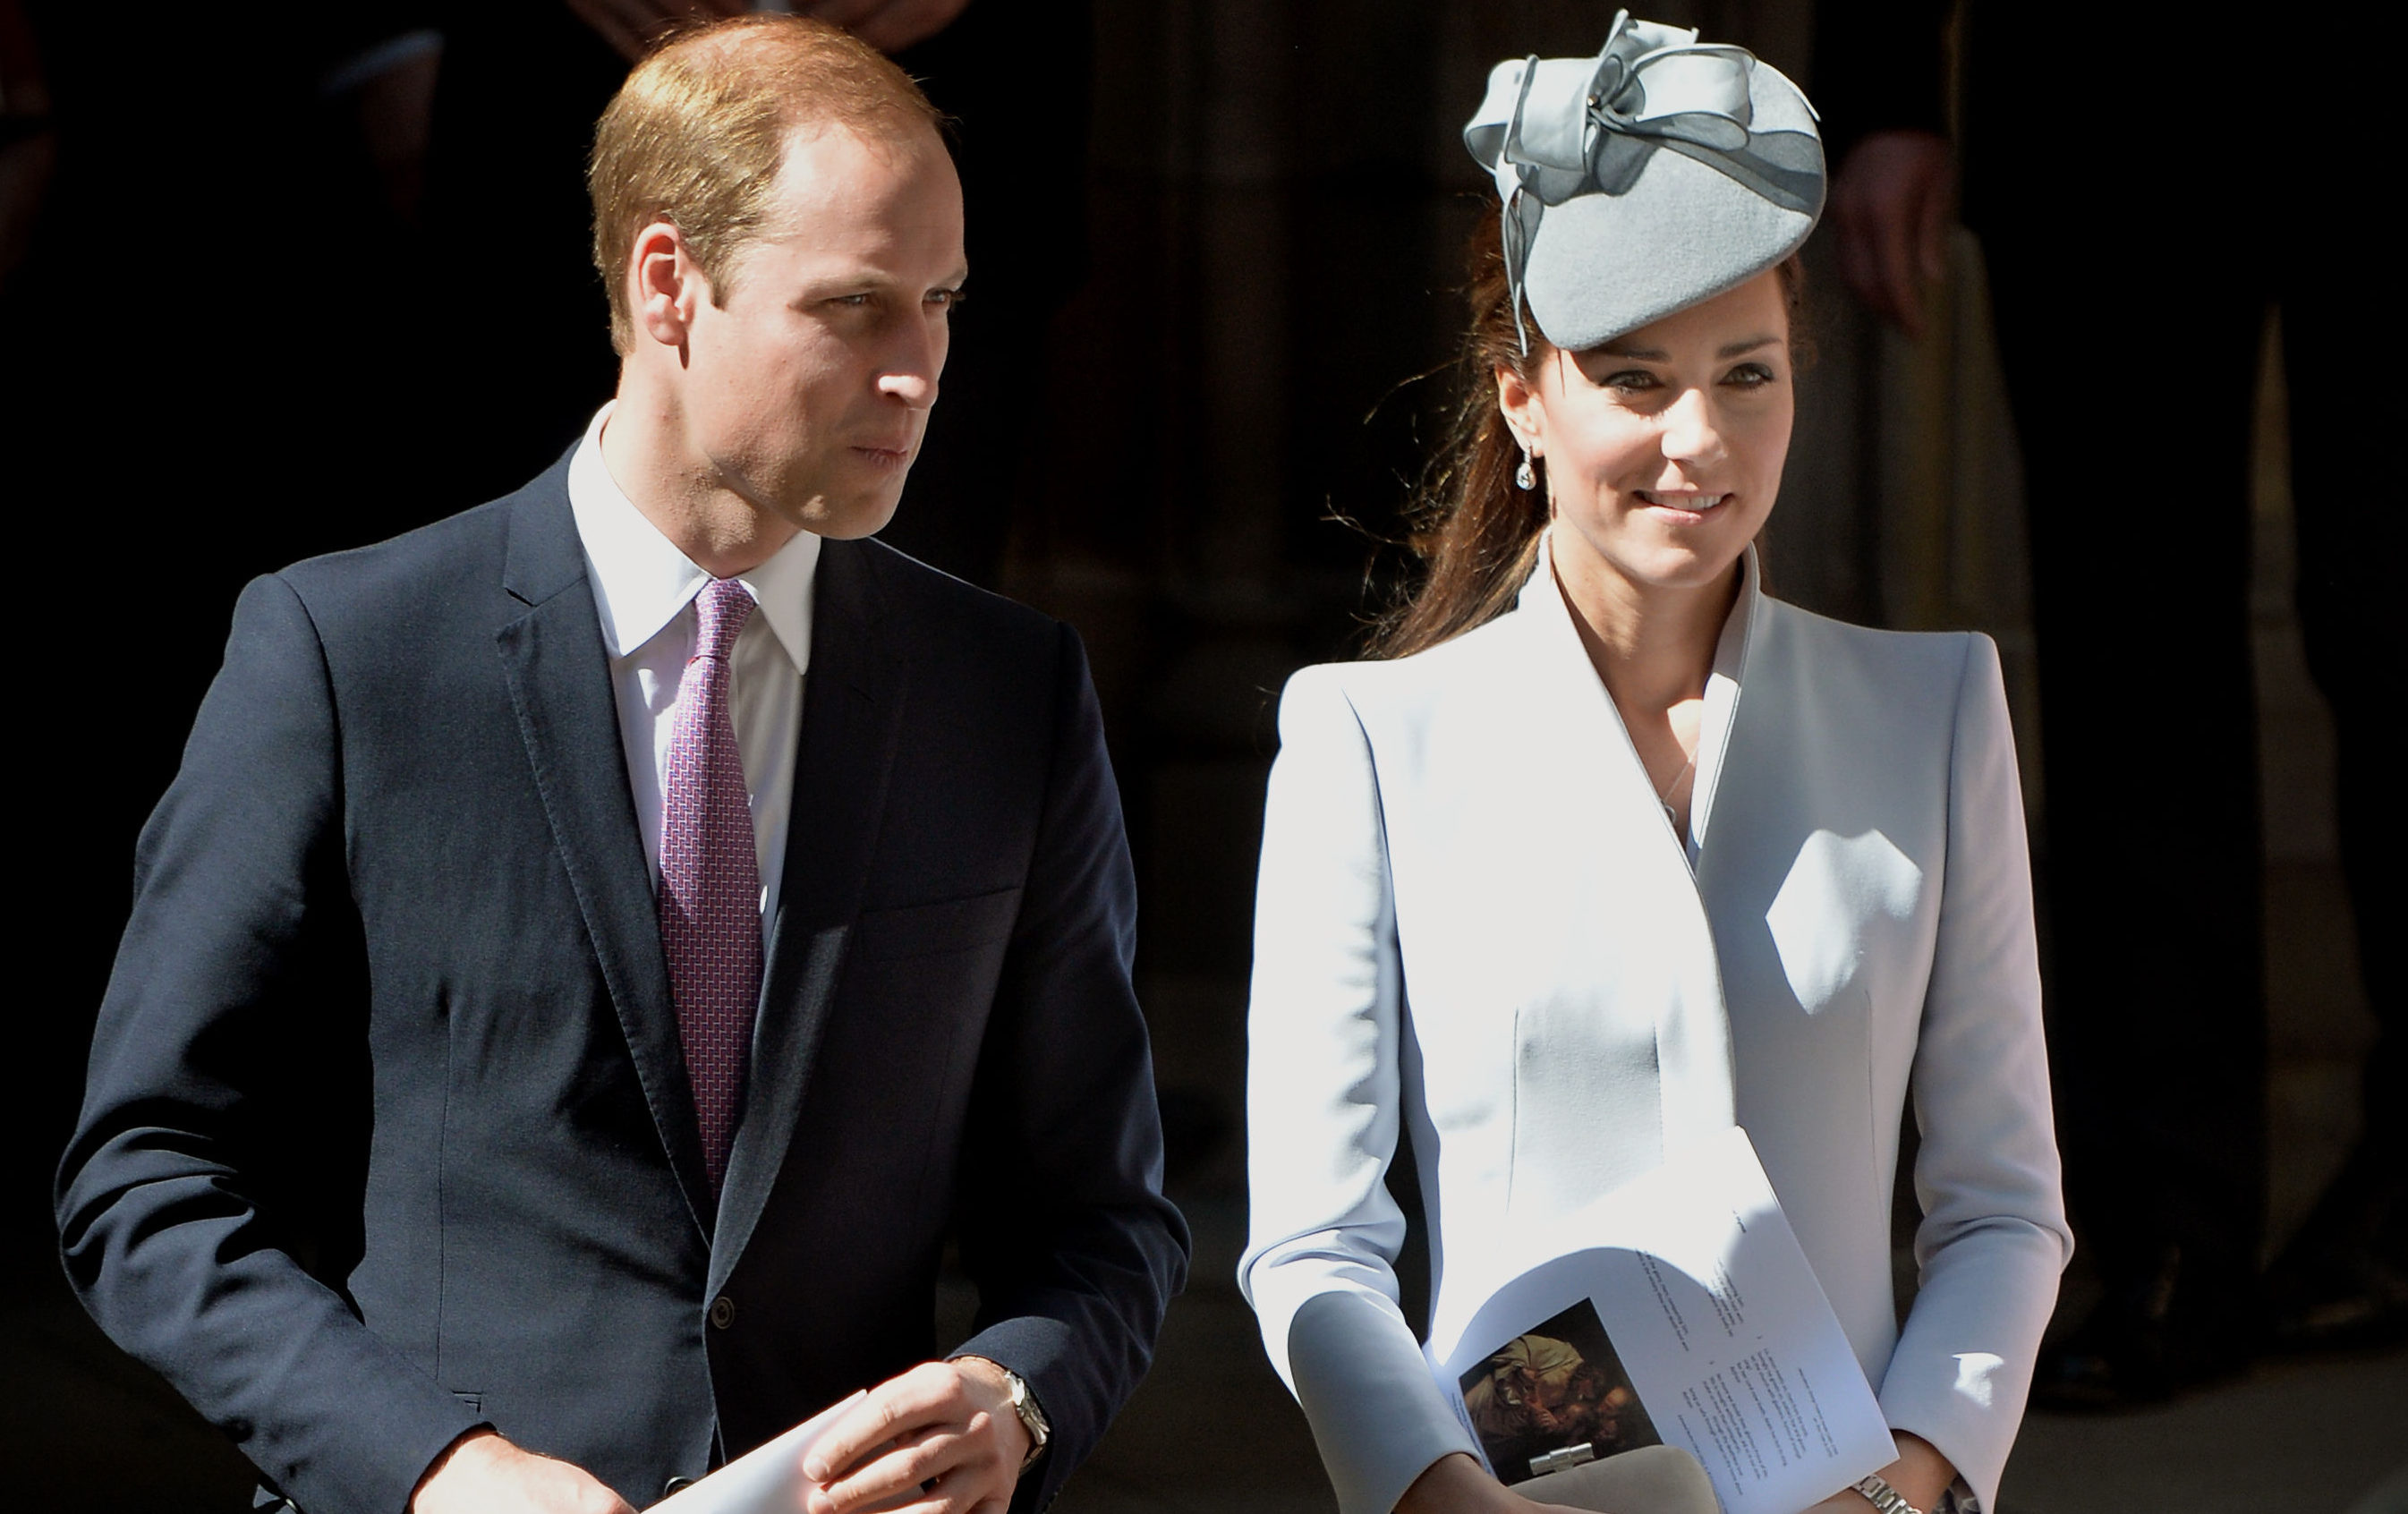 The Duke and Duchess of Cambridge.